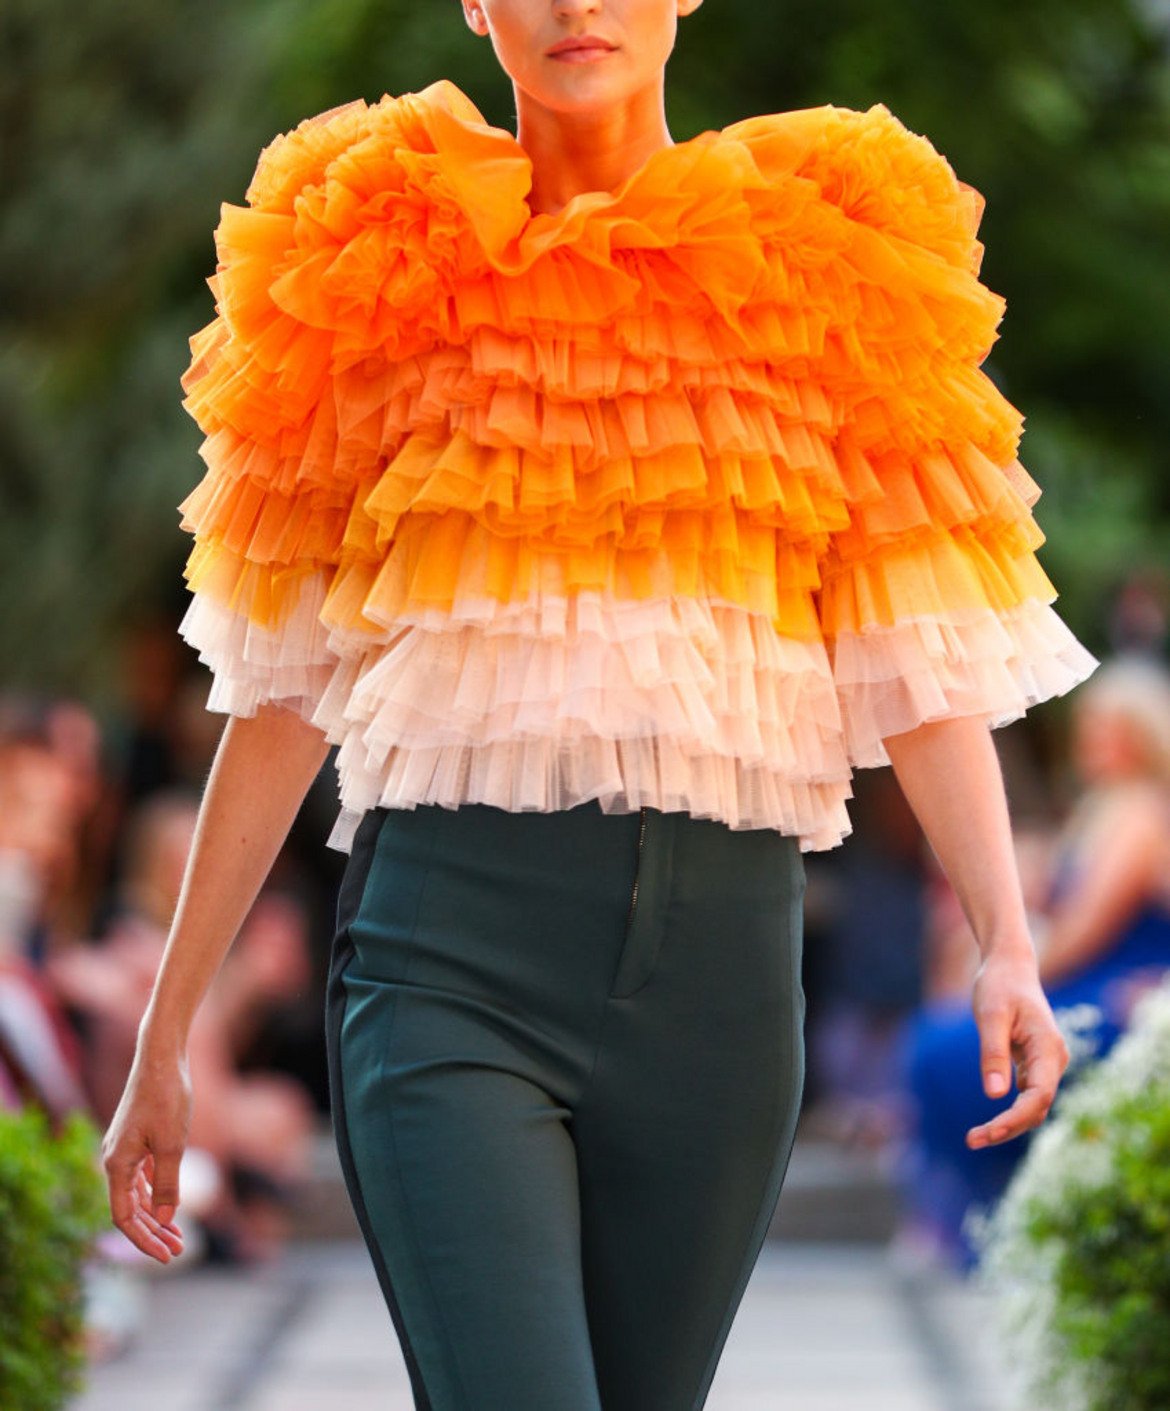 Портокалова кора (Orange Peel)
И оранжевото почти неизменно присъства в пролетно-летните тенденции през последното десетилетие. Не отстъпва и тази година. 

Модел на Марсел Остертаг от Берлинската седмица на модата през юли 2019 г.